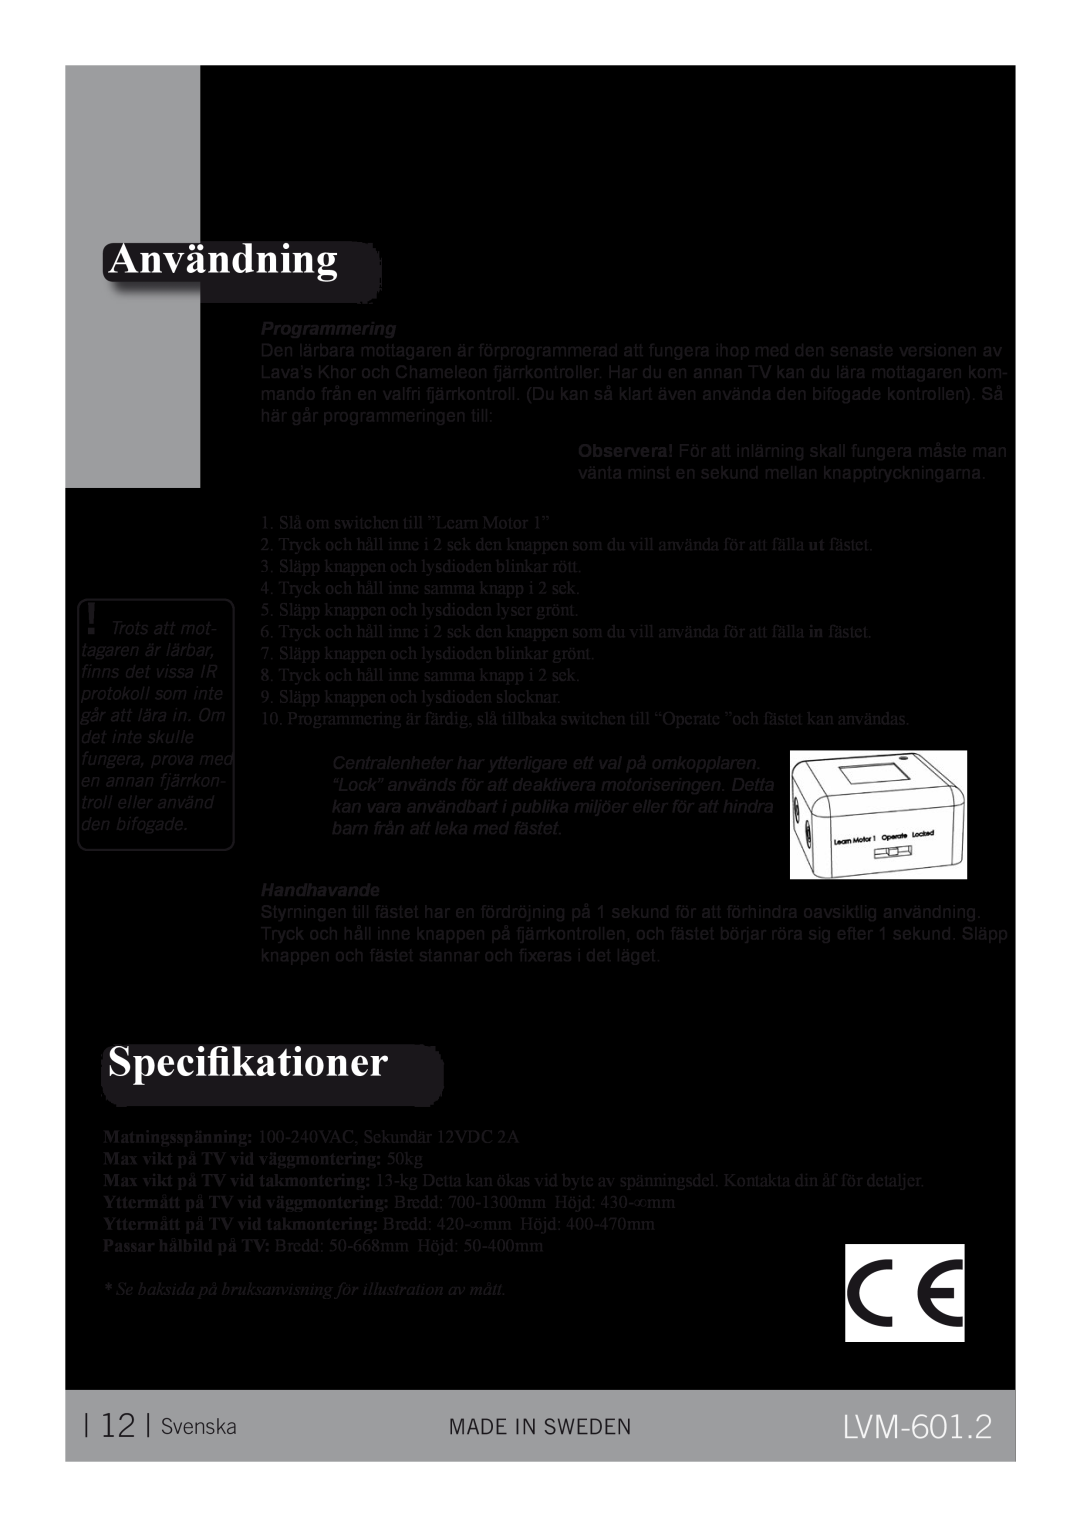 CLO Systems LVM-601-2 manual Användning, Speciﬁkationer, Svenska, LVM-601.2, Programmering, Handhavande 